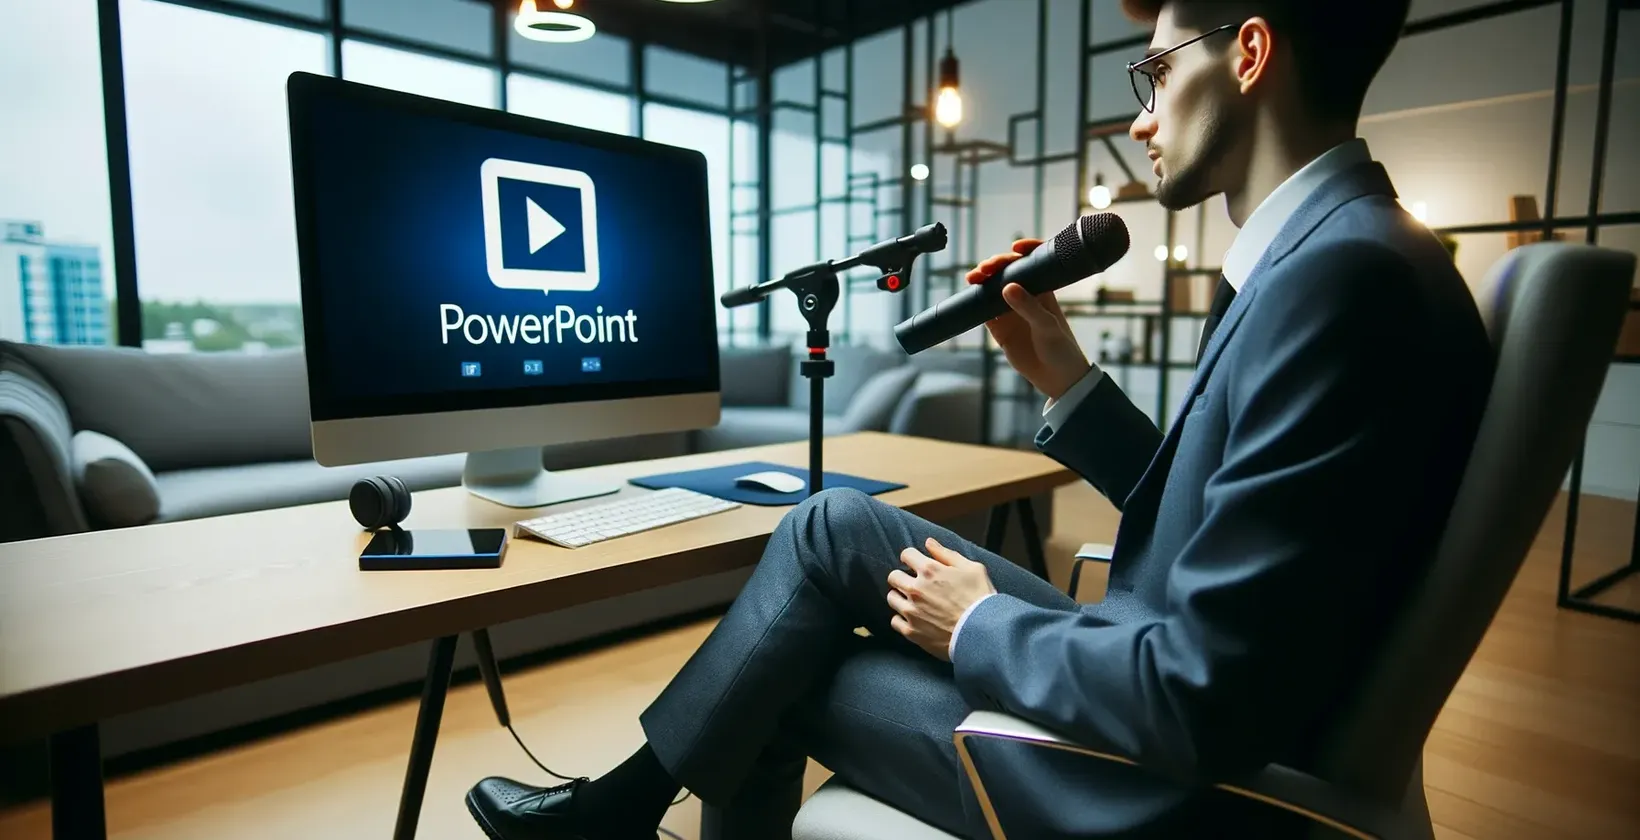 رجل في المكتب مع ميكروفون ينظر إلى الشاشة التي تعرض شعار PowerPoint.